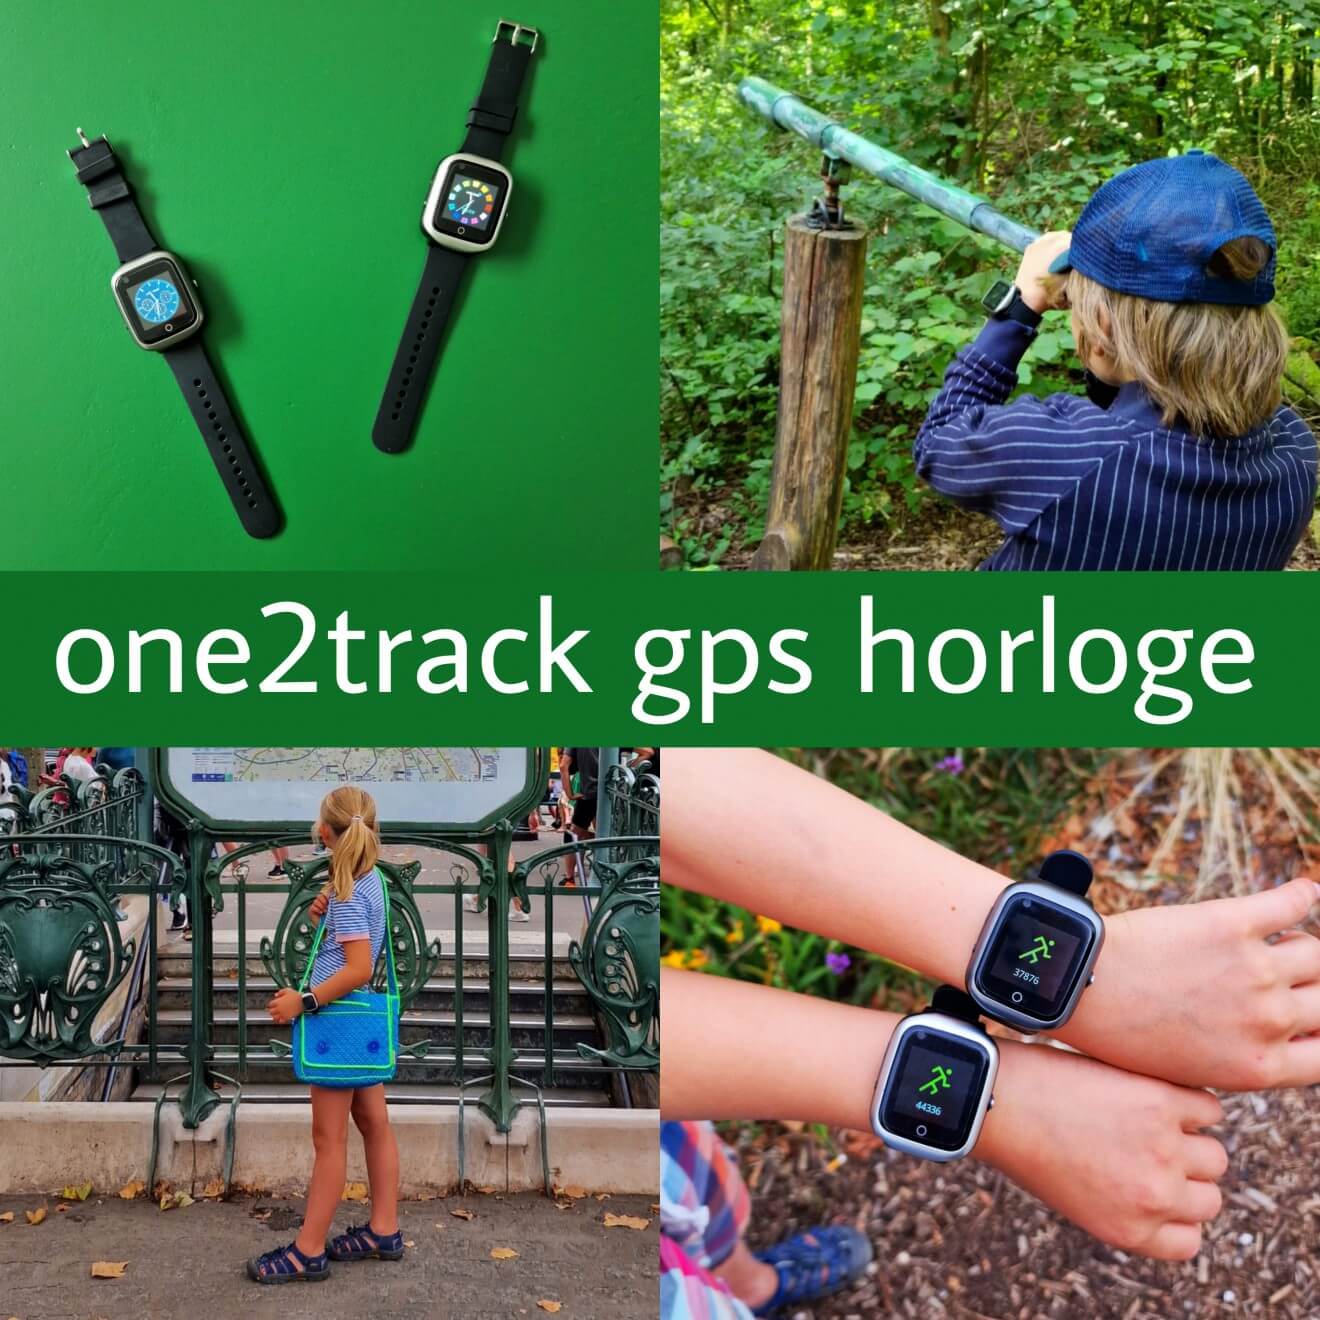 One2Track GPS horloge voor je kind: locatie, bellen & stappenteller. Ben je op zoek naar een fijn GPS horloge voor je kind? Onze kinderen gebruiken de GPS horloges van One2Track al een paar jaar. Met deze One2Track GPS horloges kun je bellen, het is een locatie tracker en een stappenteller, handig voor je kind dus. Nu is er een nieuw model met videobellen, de One2Track Connect NEO, tijd voor een review!